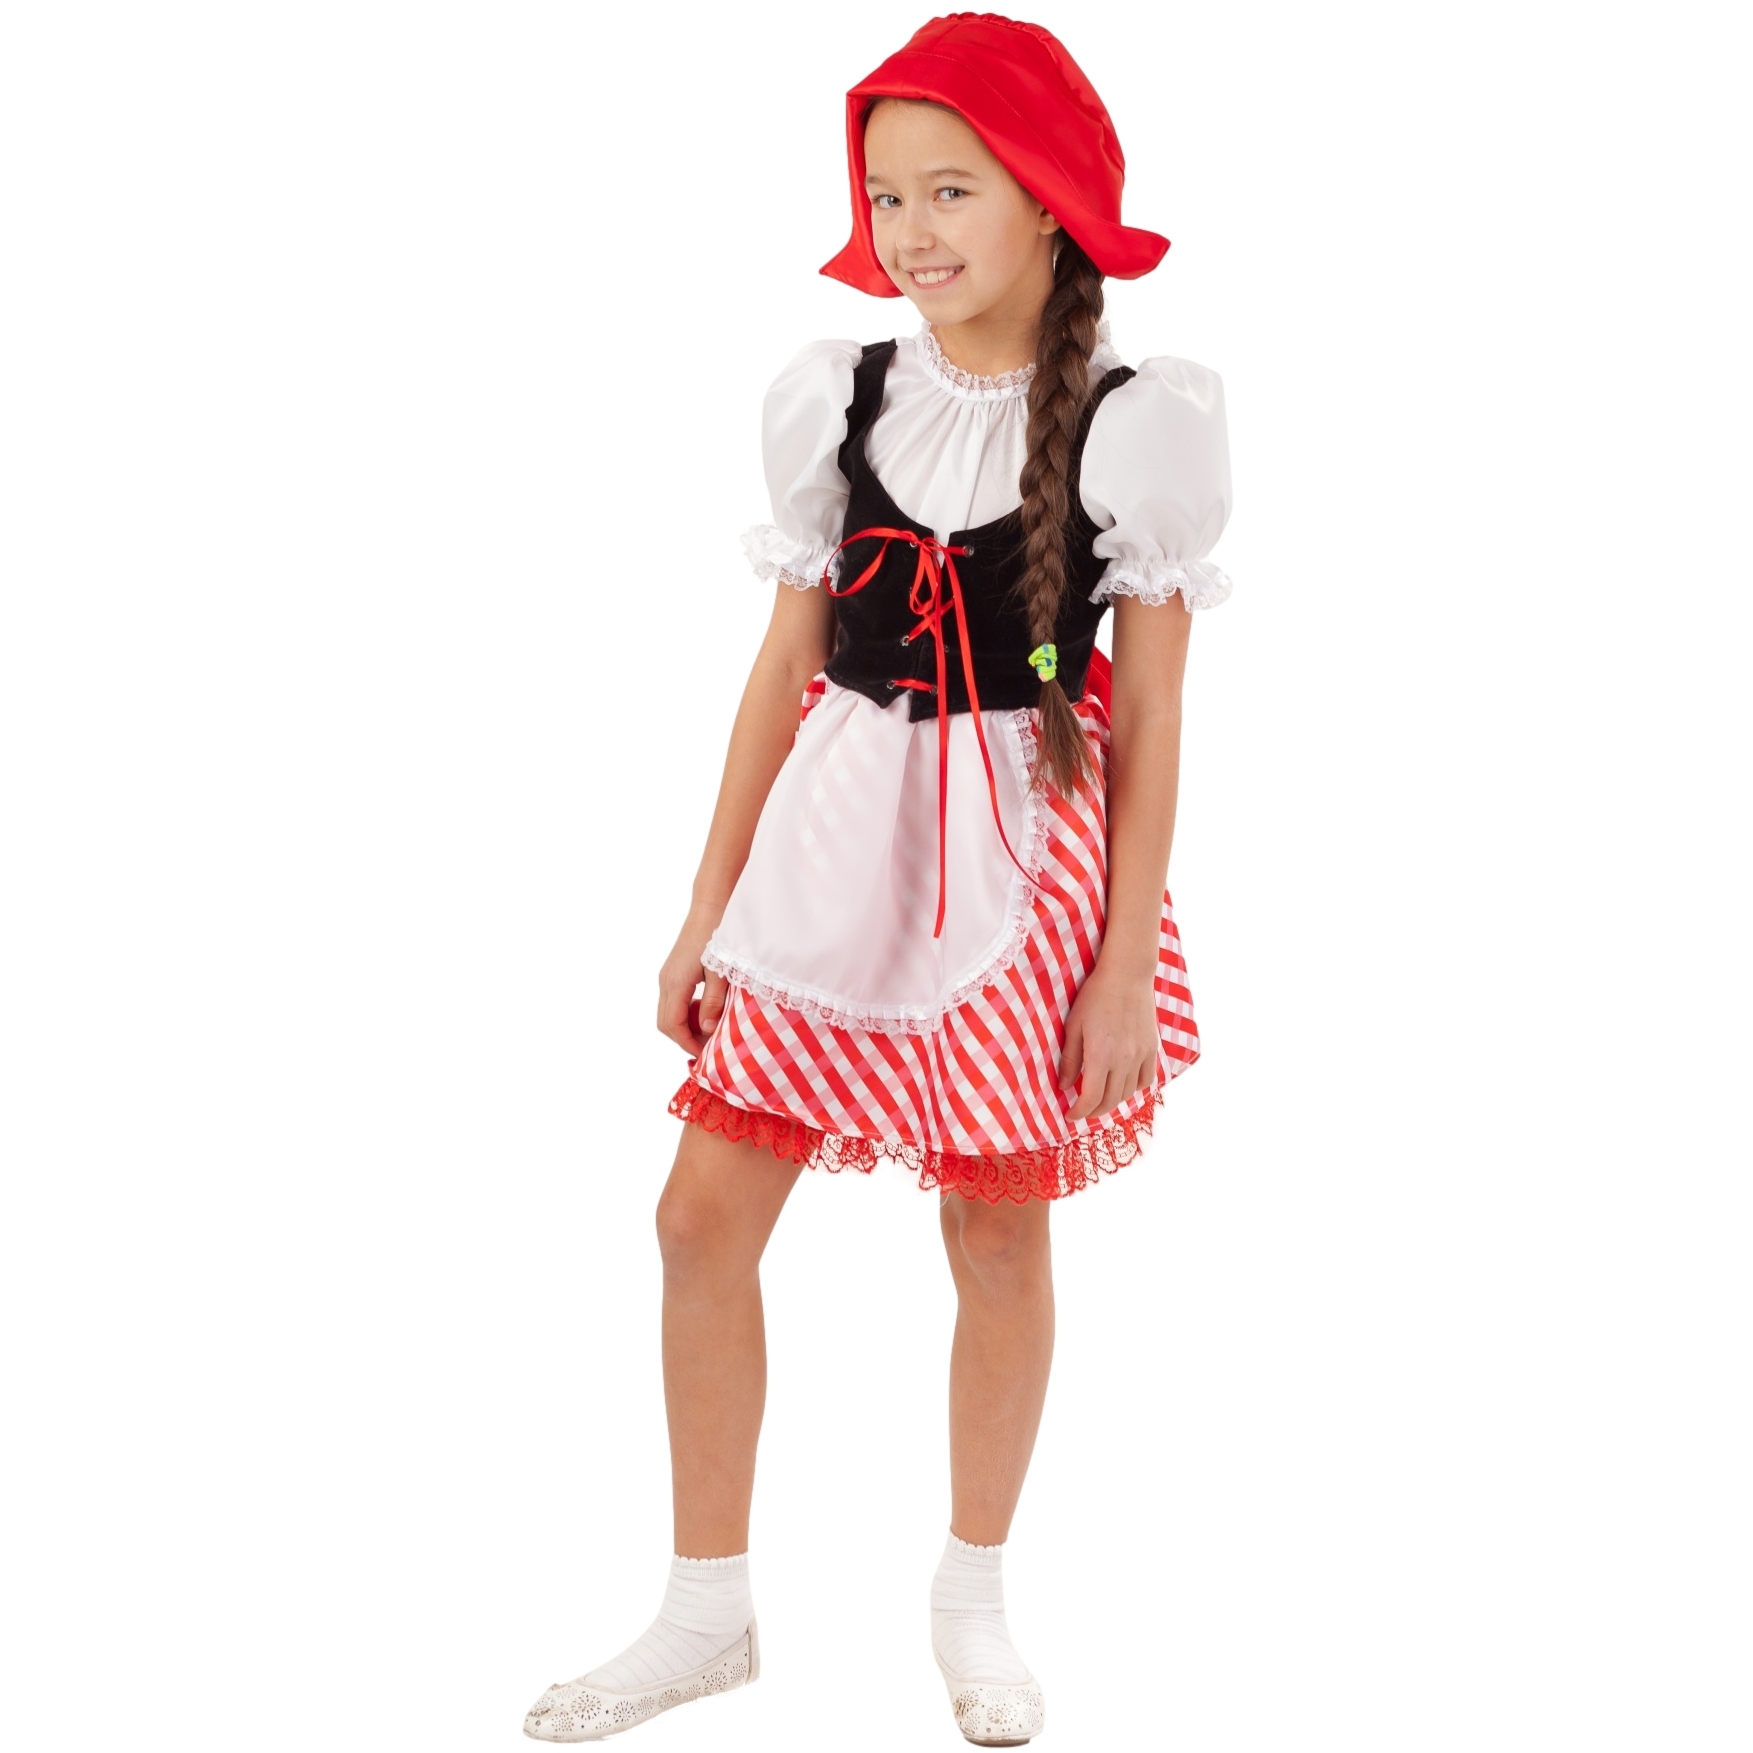 Карнавальный костюм "Красная шапочка" (платье, шапочка) размер 128-64